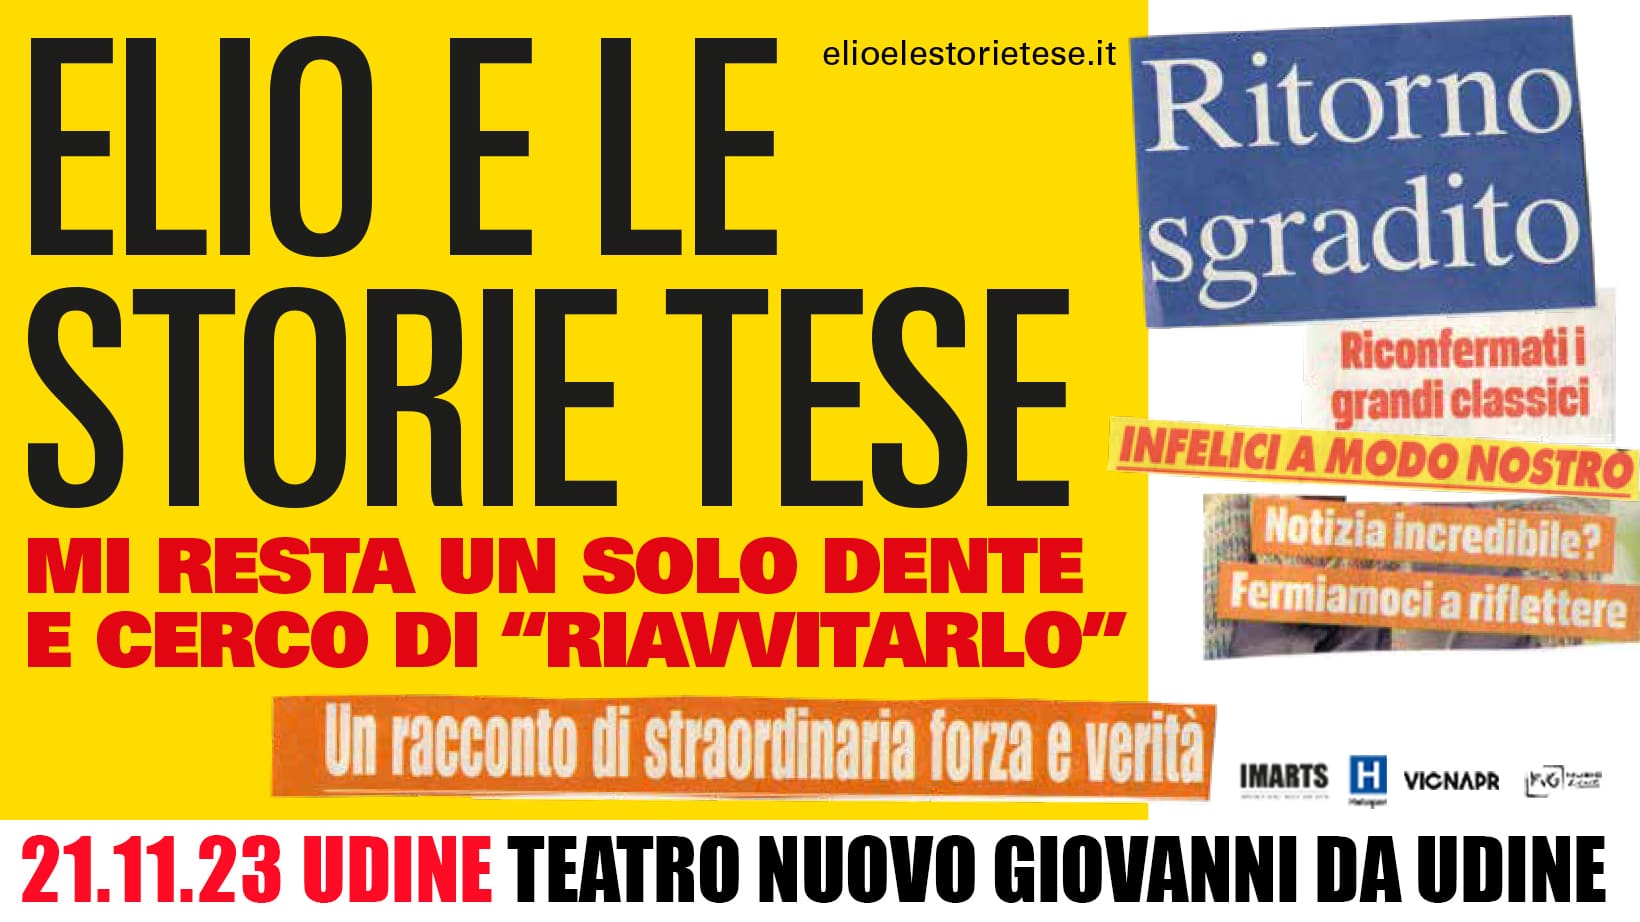 ELIO E LE STORIE TESE annunciano la reunion e un tour teatrale: c'è anche una data in Friuli, martedì 21 novembre infatti saranno in scena al Teatro Nuovo Giovanni da Udine